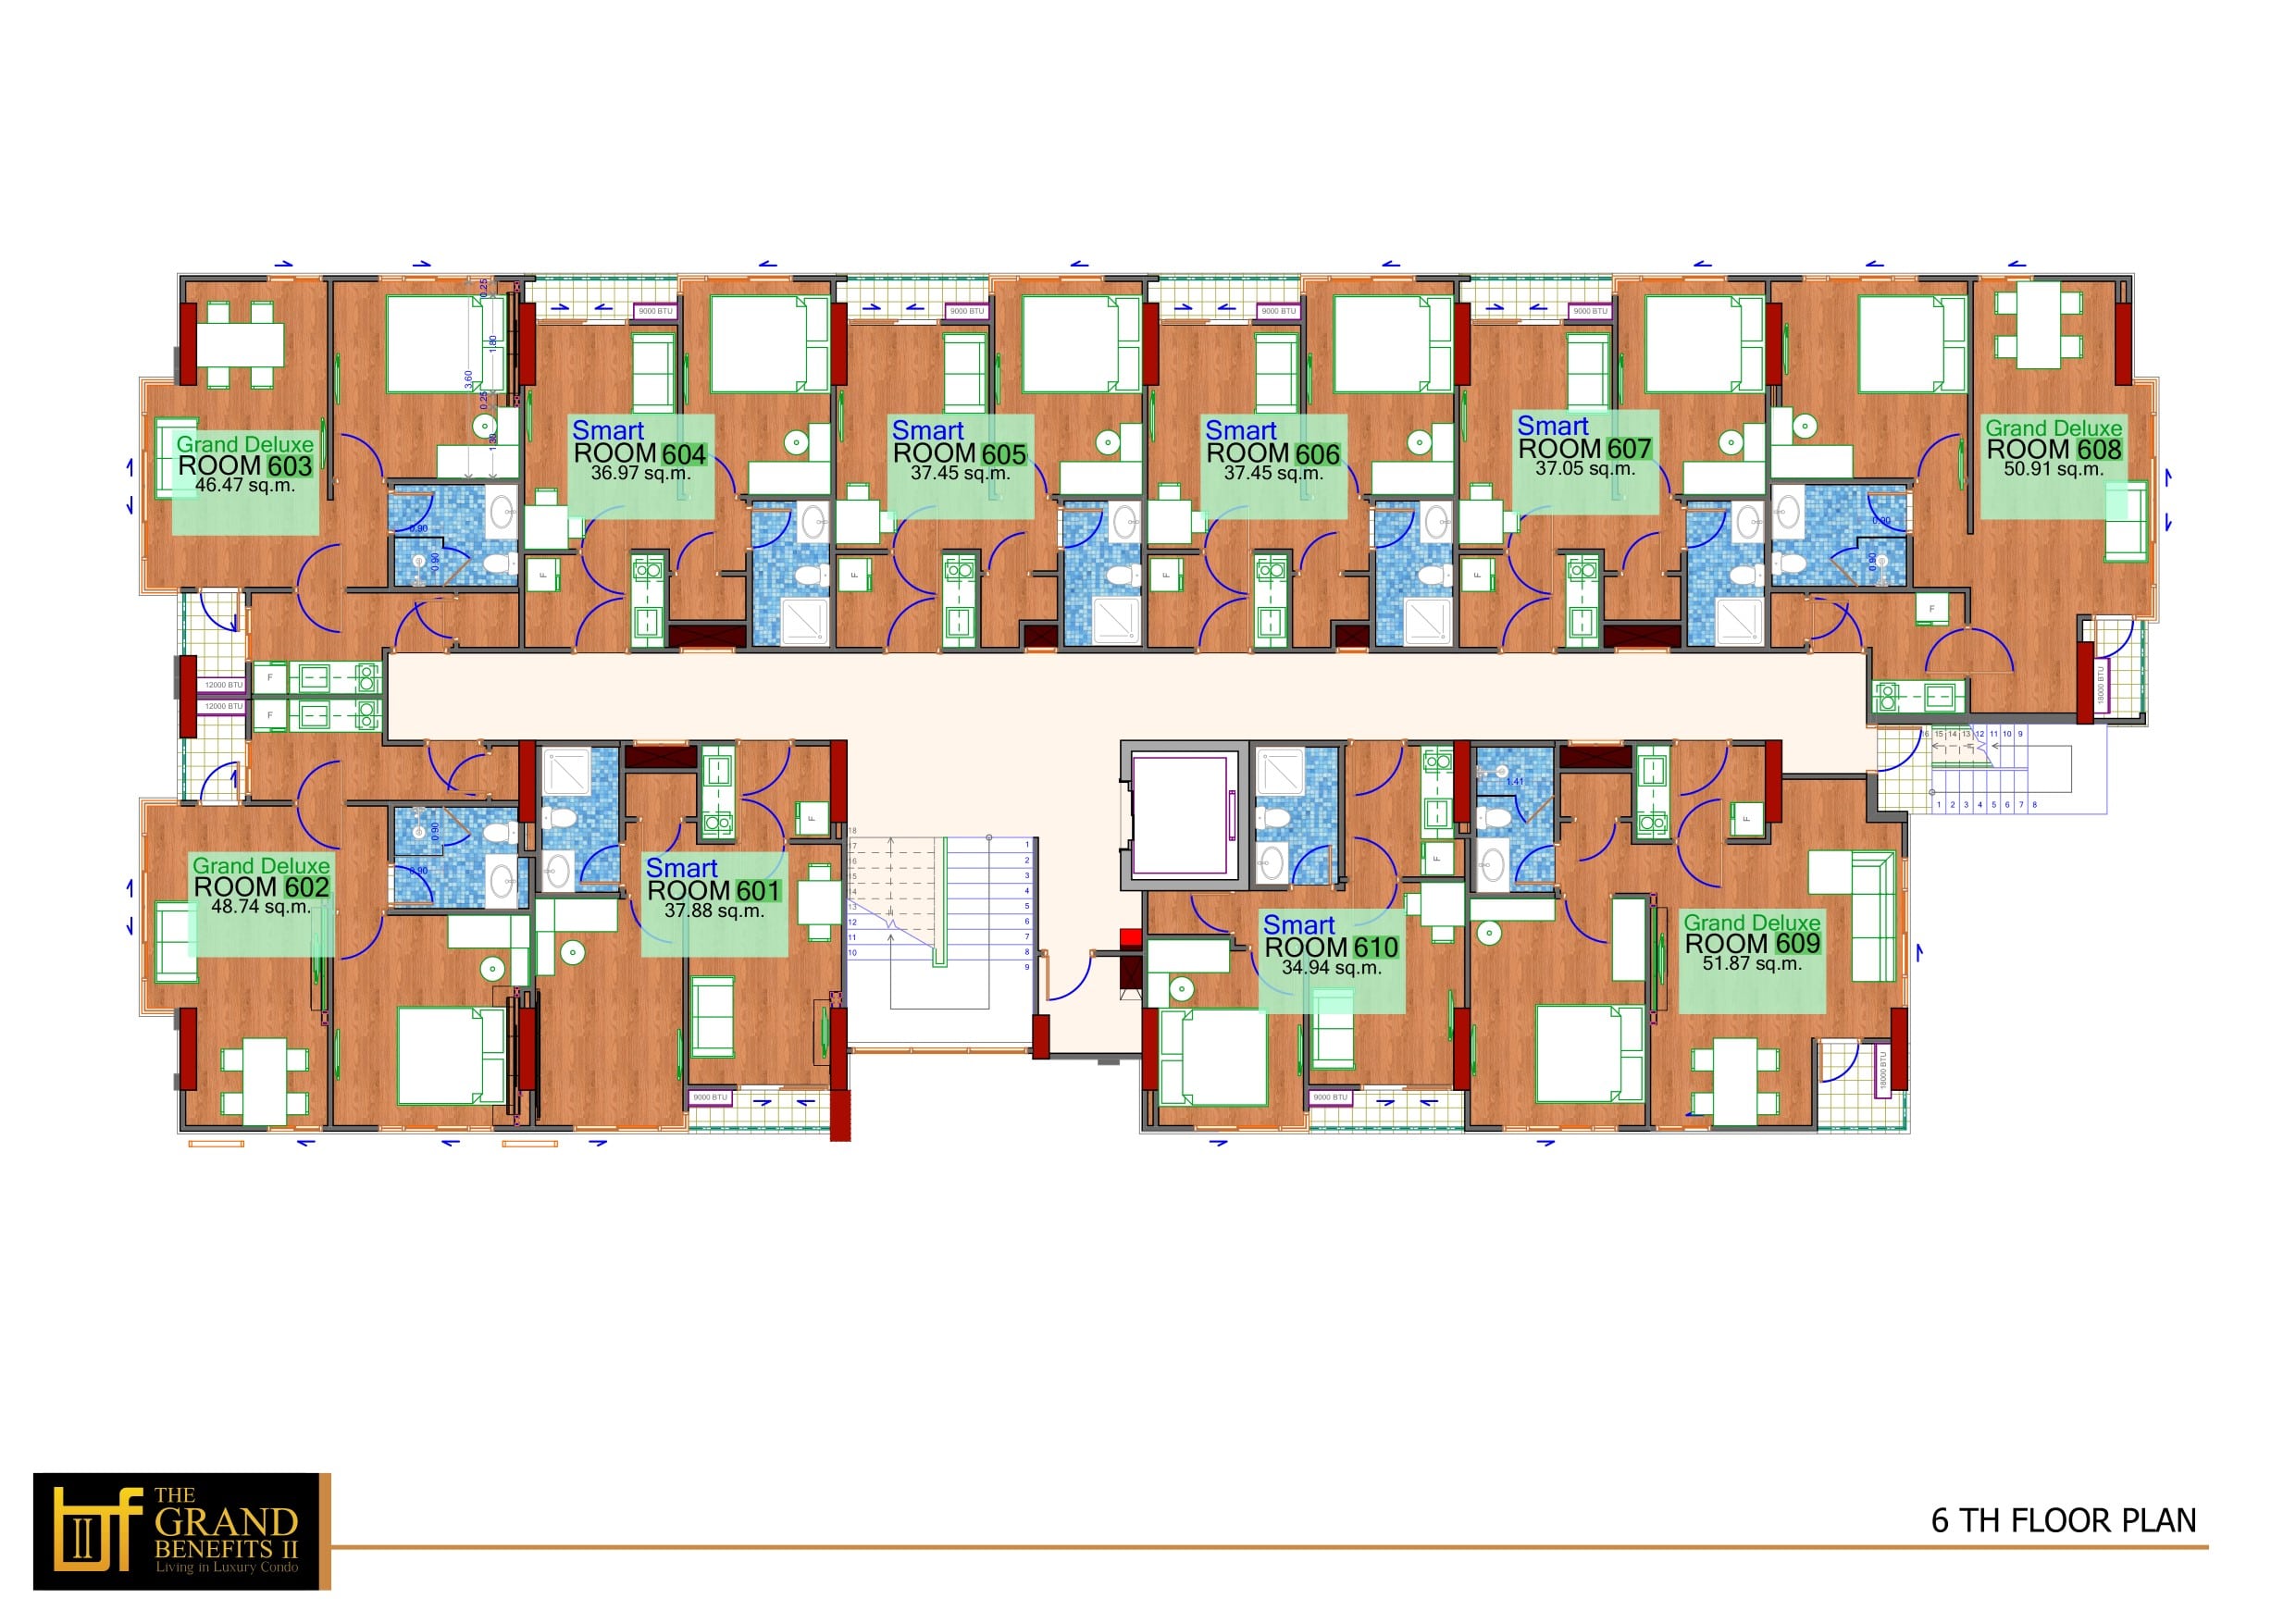 6 Floor Plan